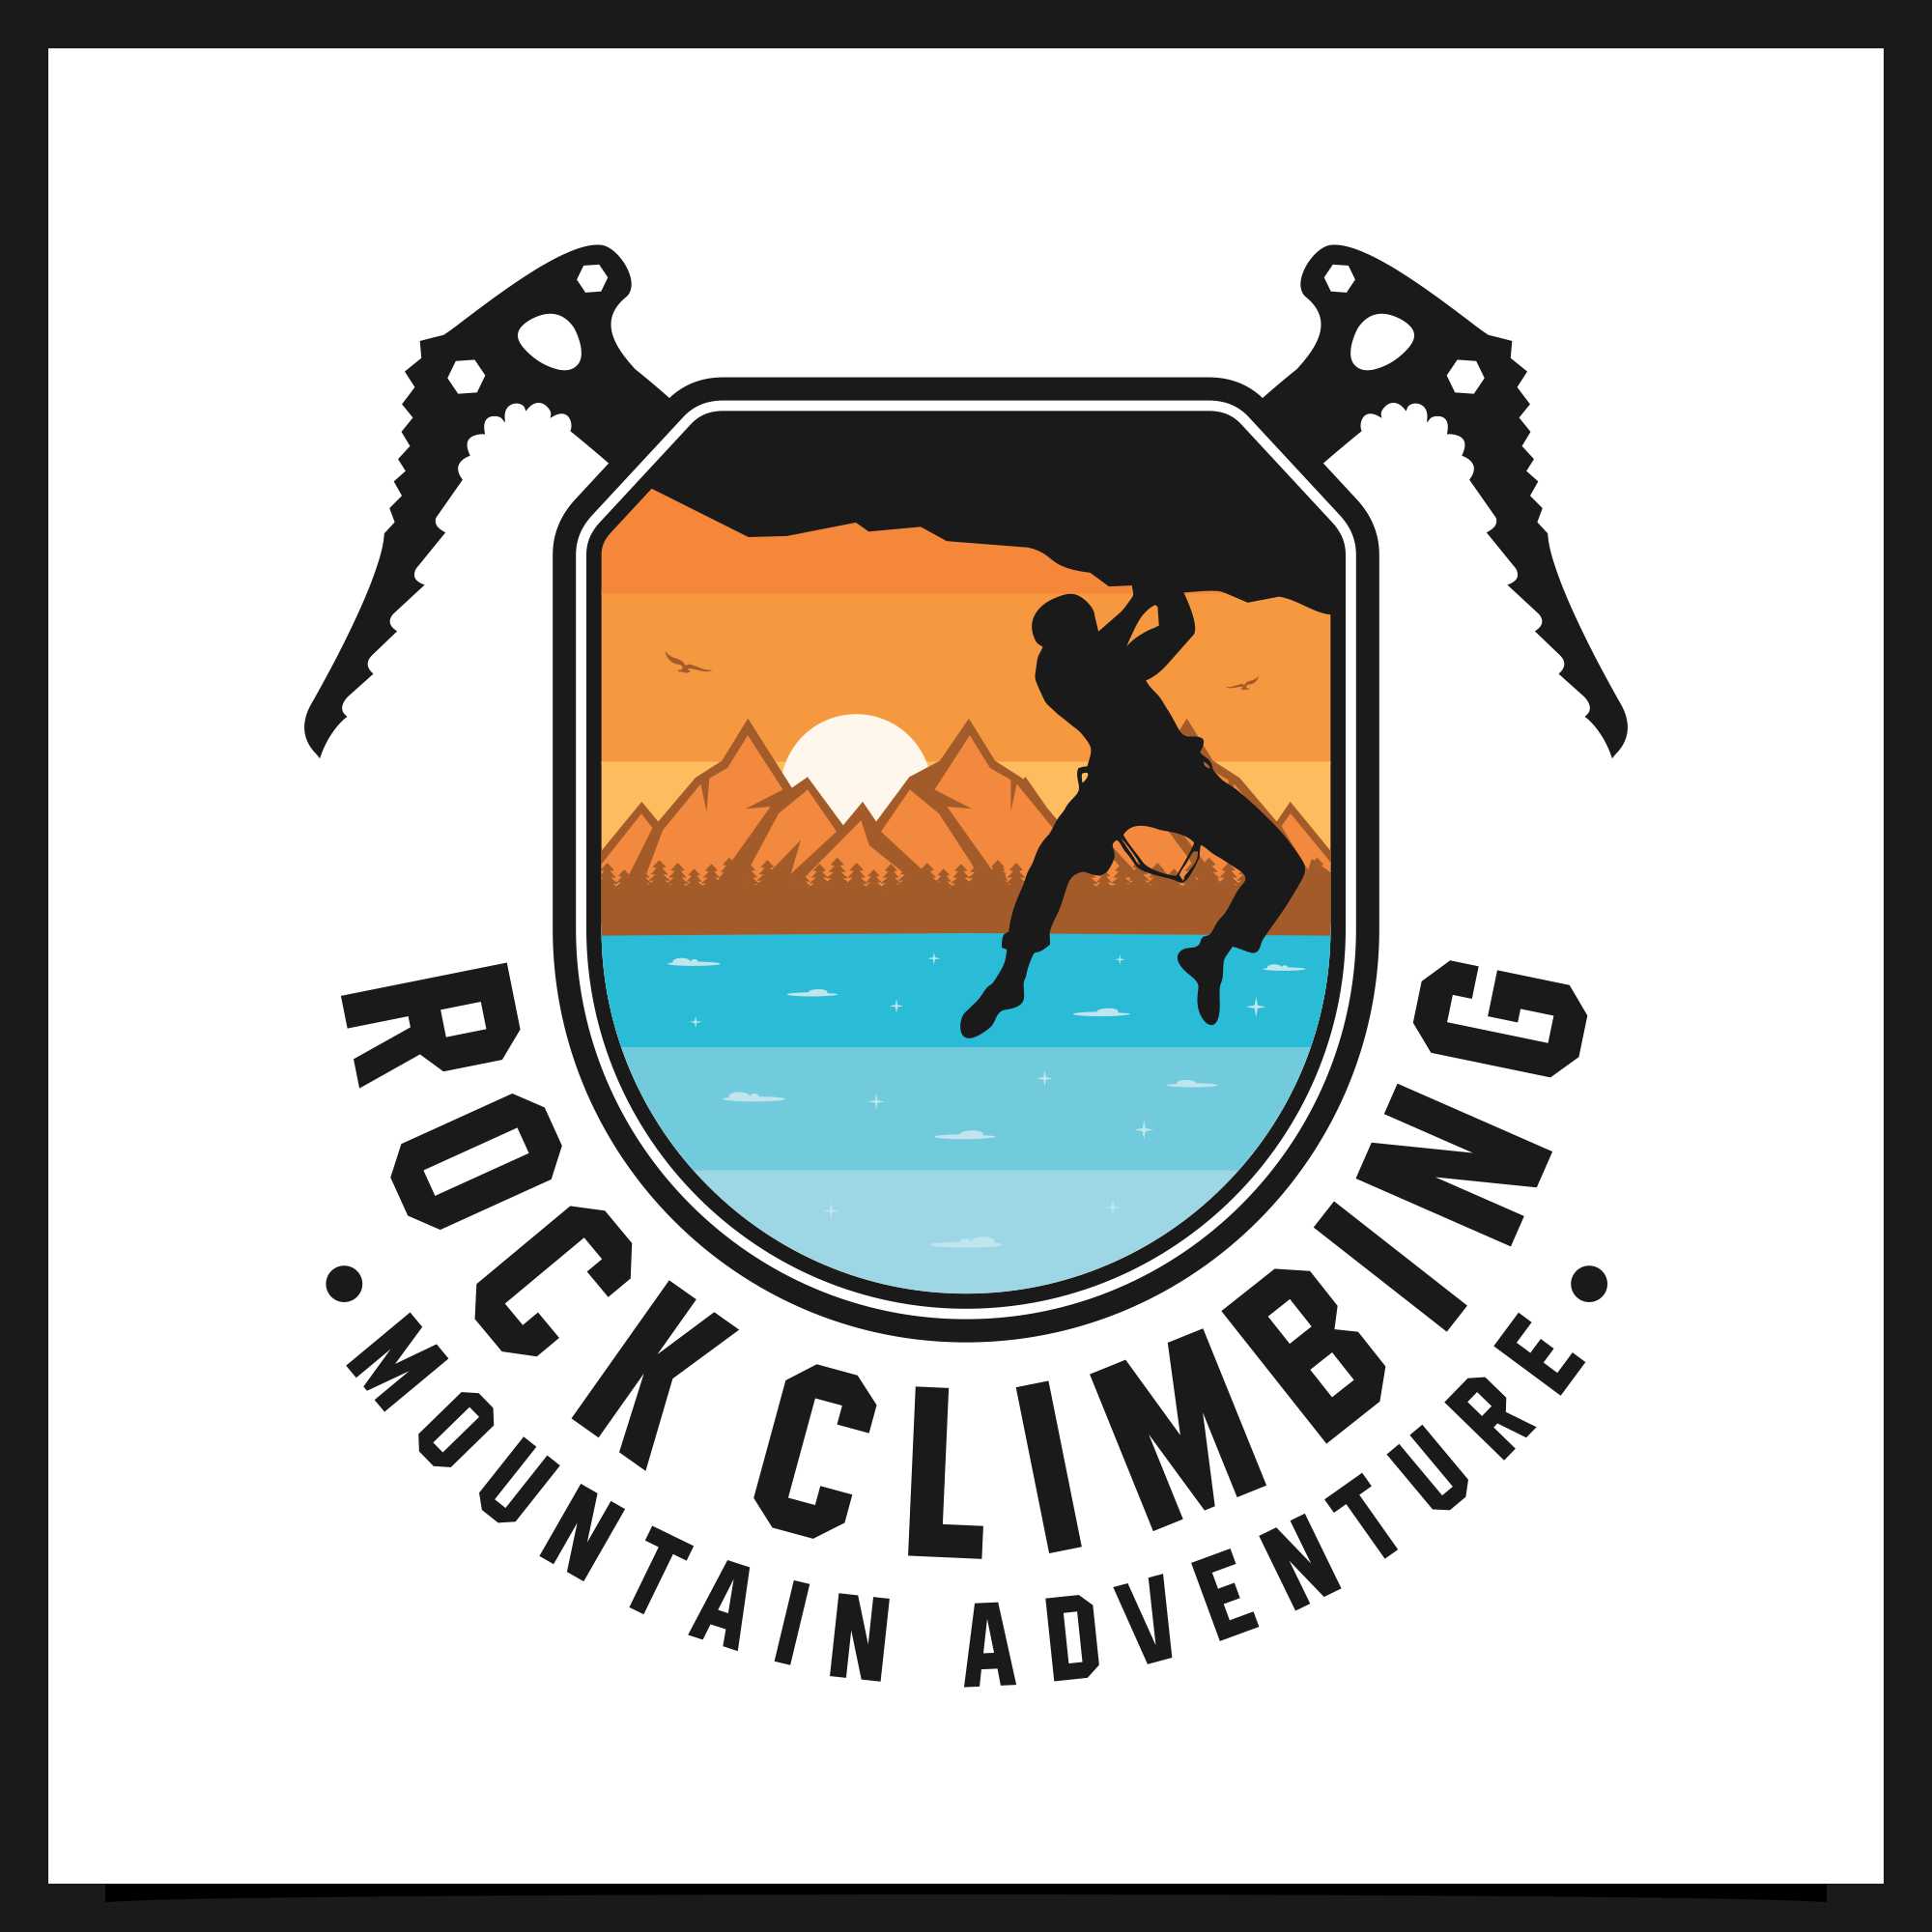 Rock Climbing mountain adventure logo - $5 preview image.